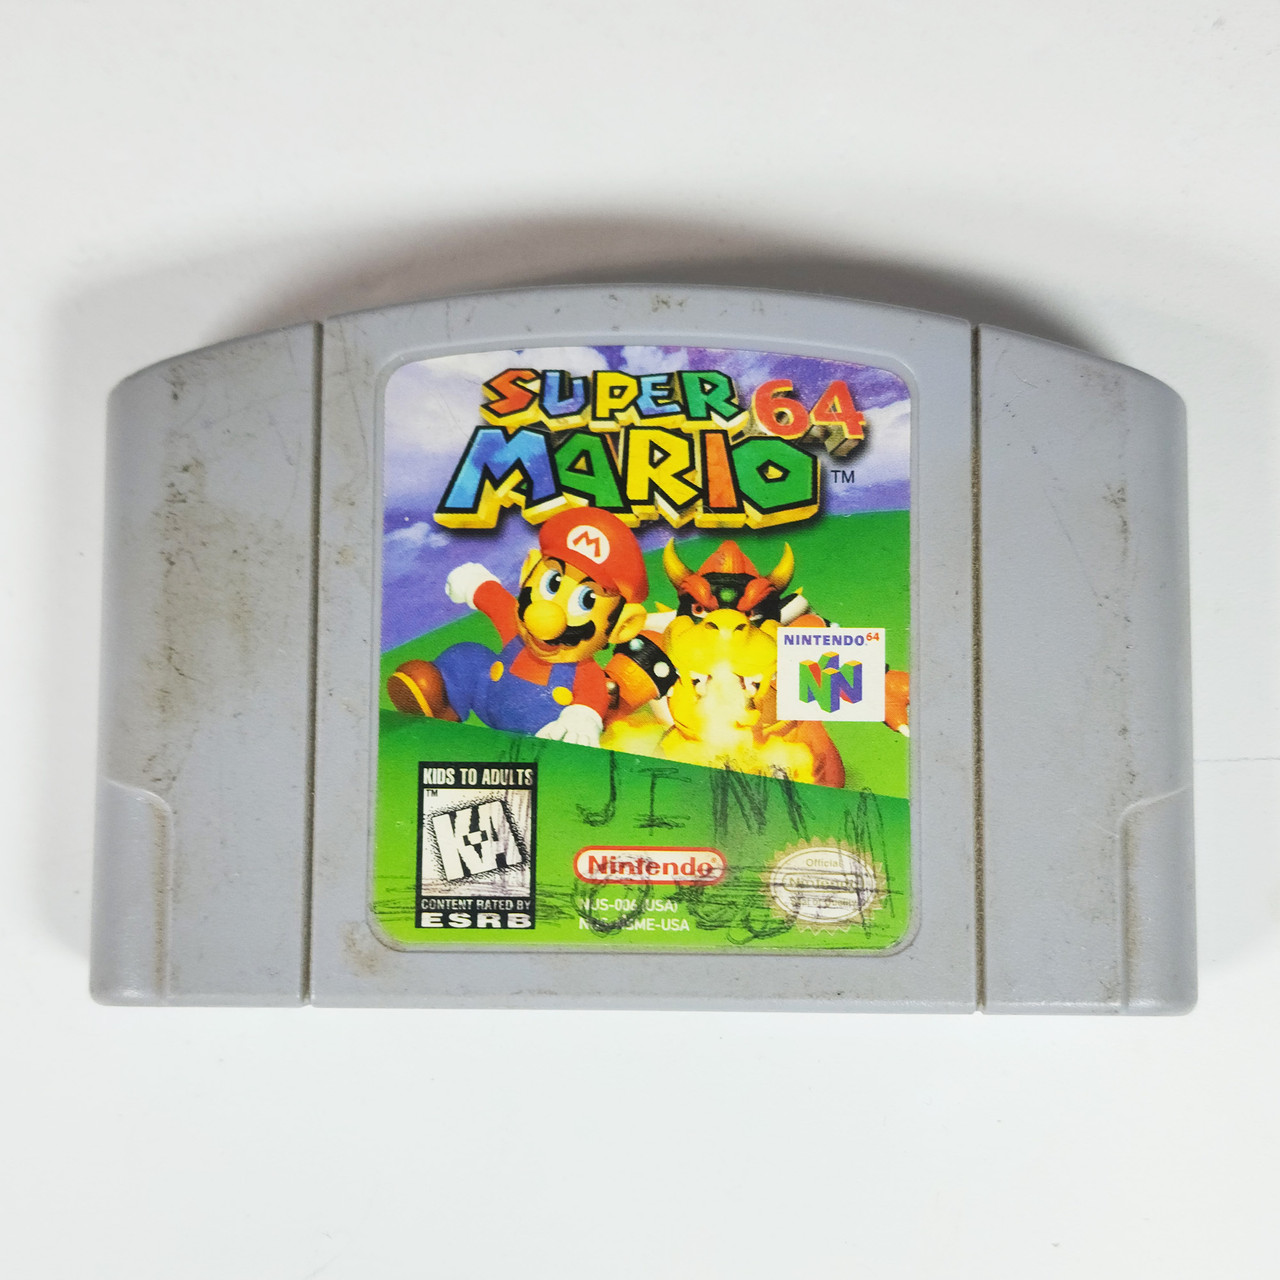 Super Mario 64 - Nintendo 64 